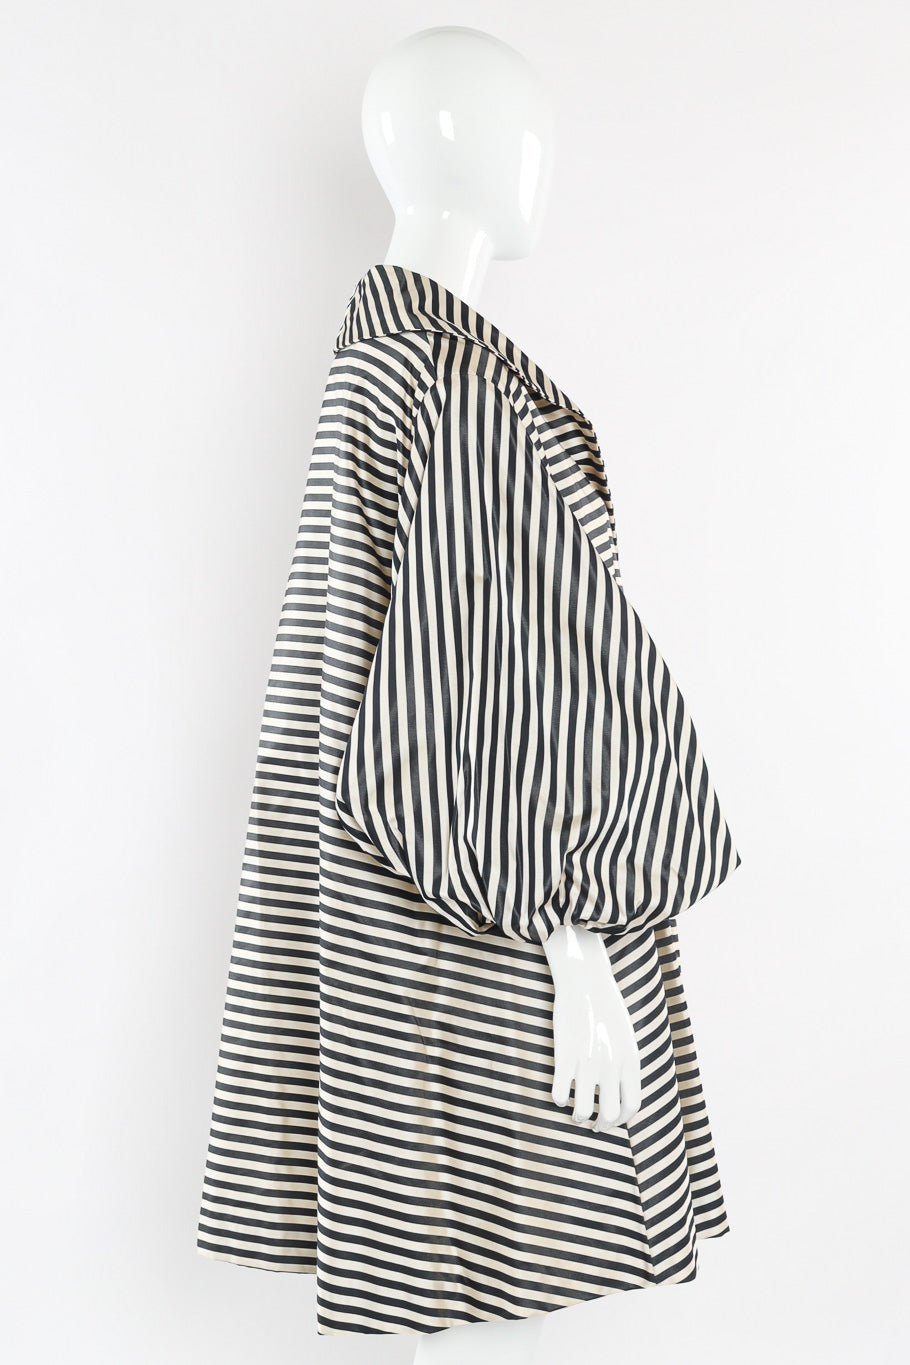 Oversized striped swing coat by Carolyne Roehm Side View @recessla